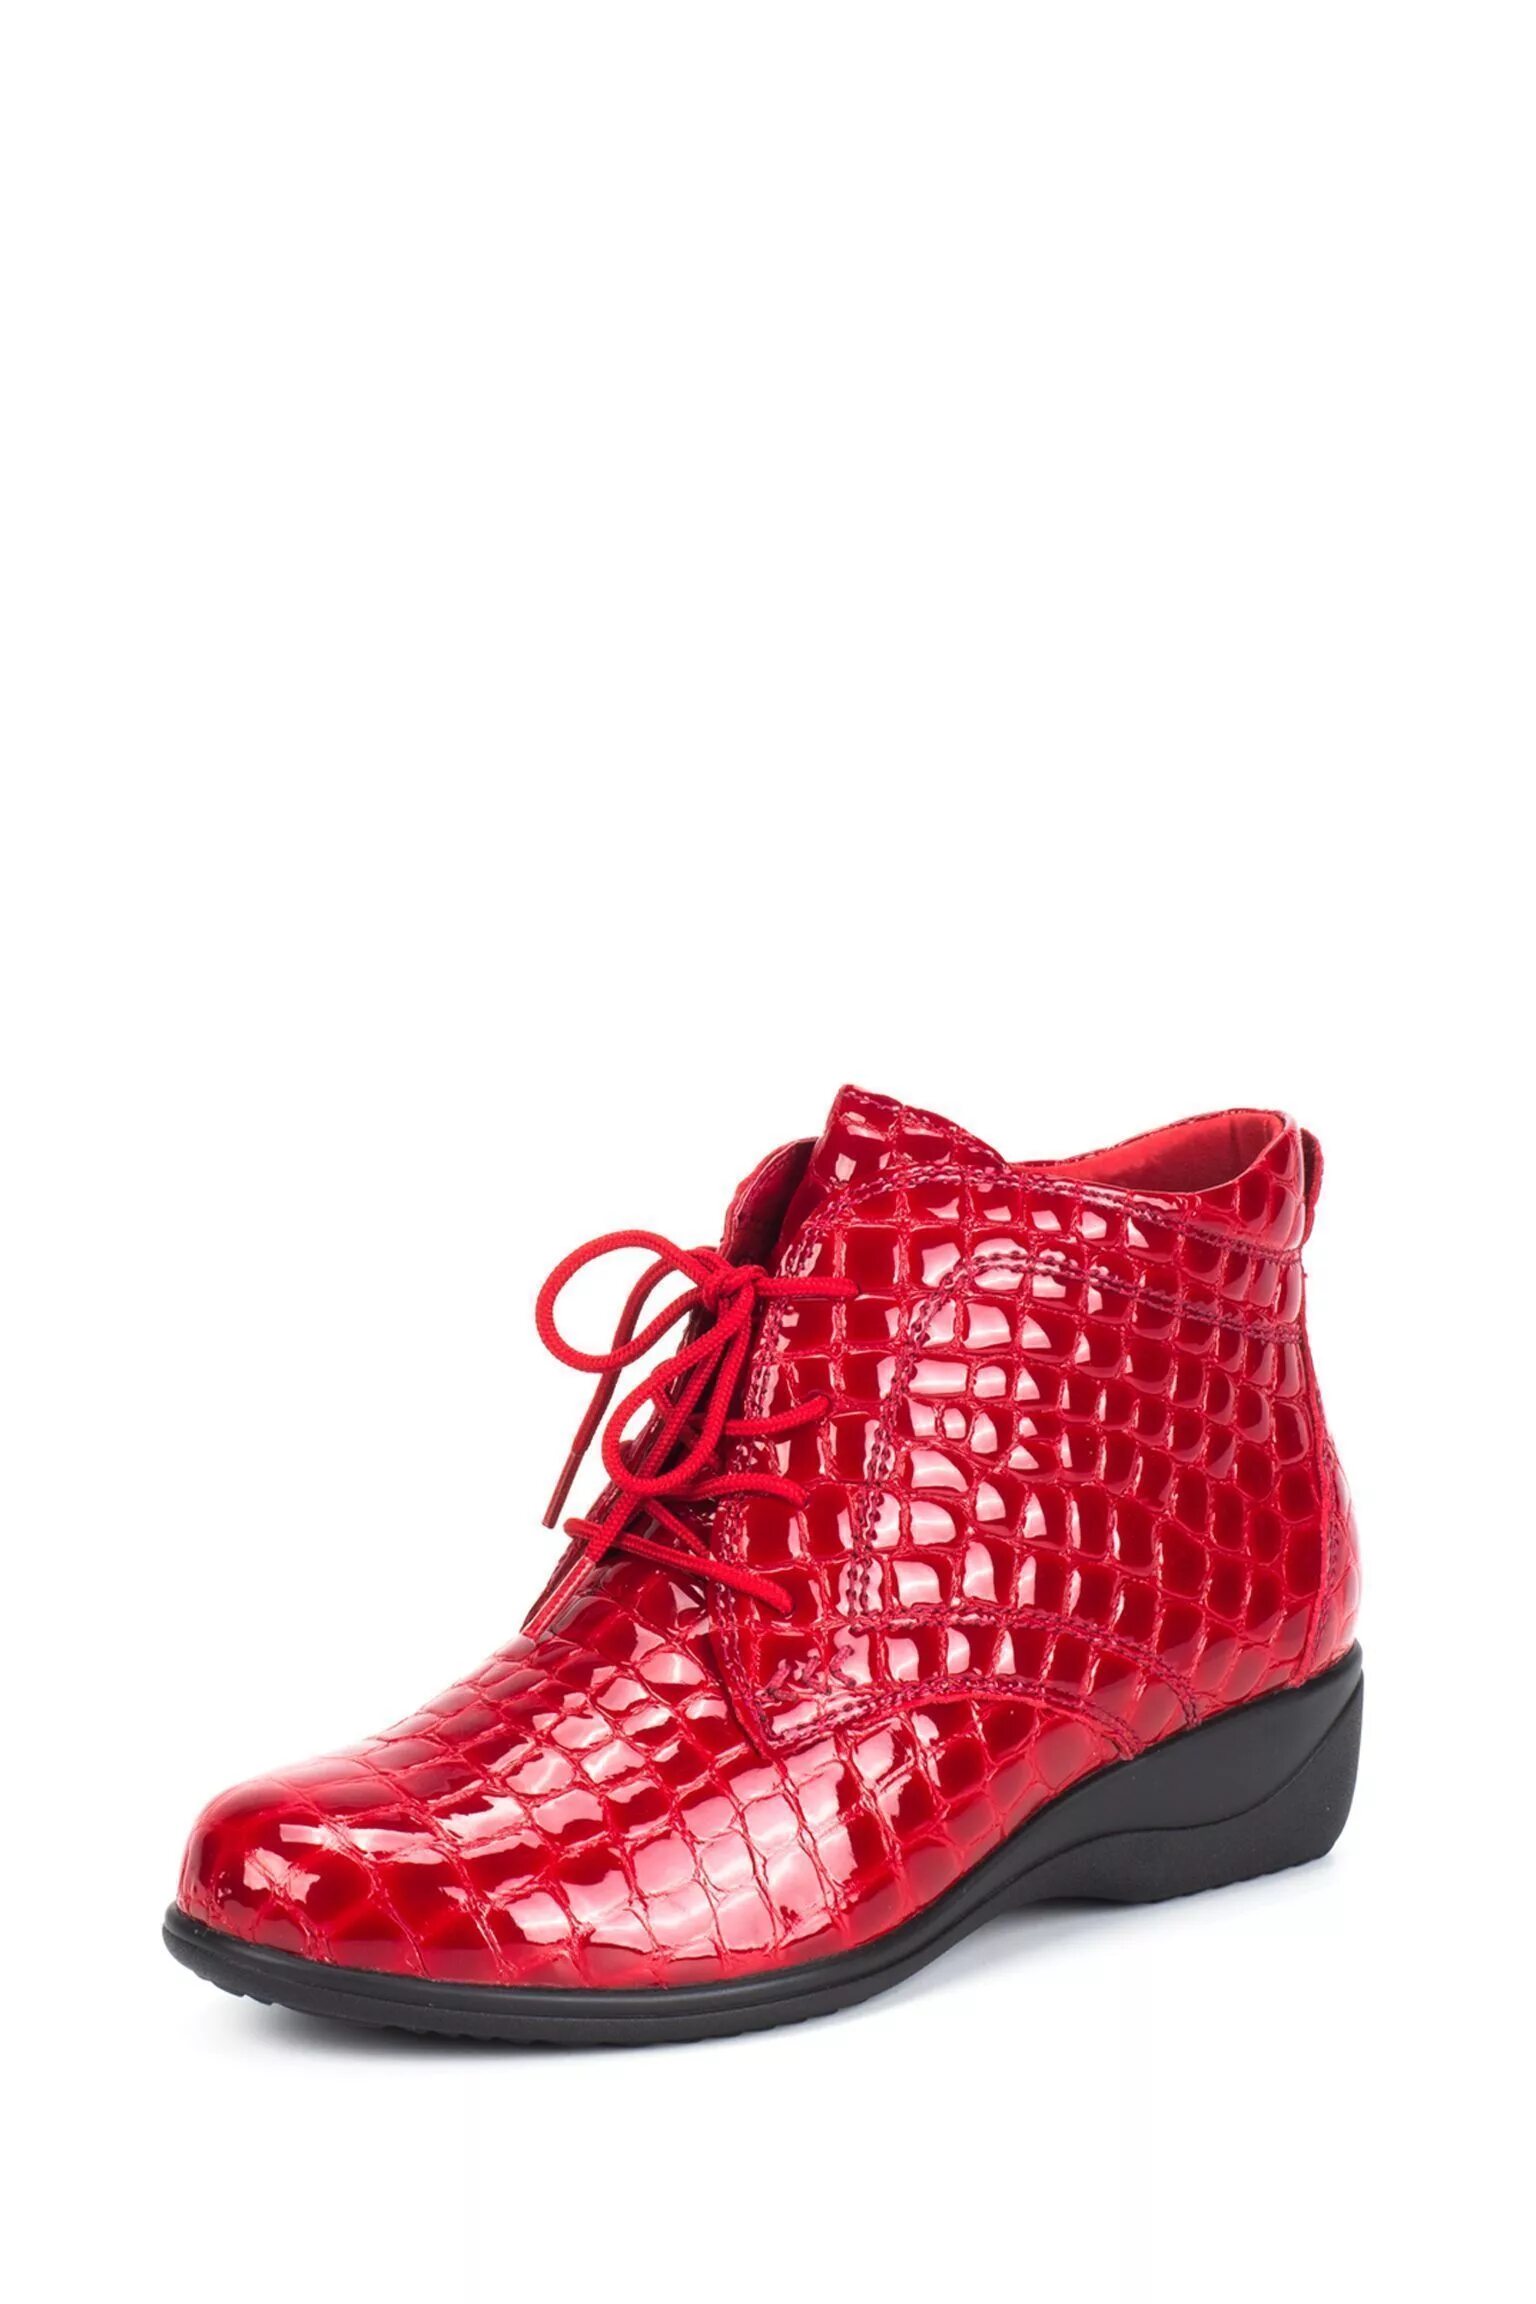 Красные ботинки. Красные ботинки женские. Красные ботиночки женские. Красные полуботинки. Купить туфли на wildberries